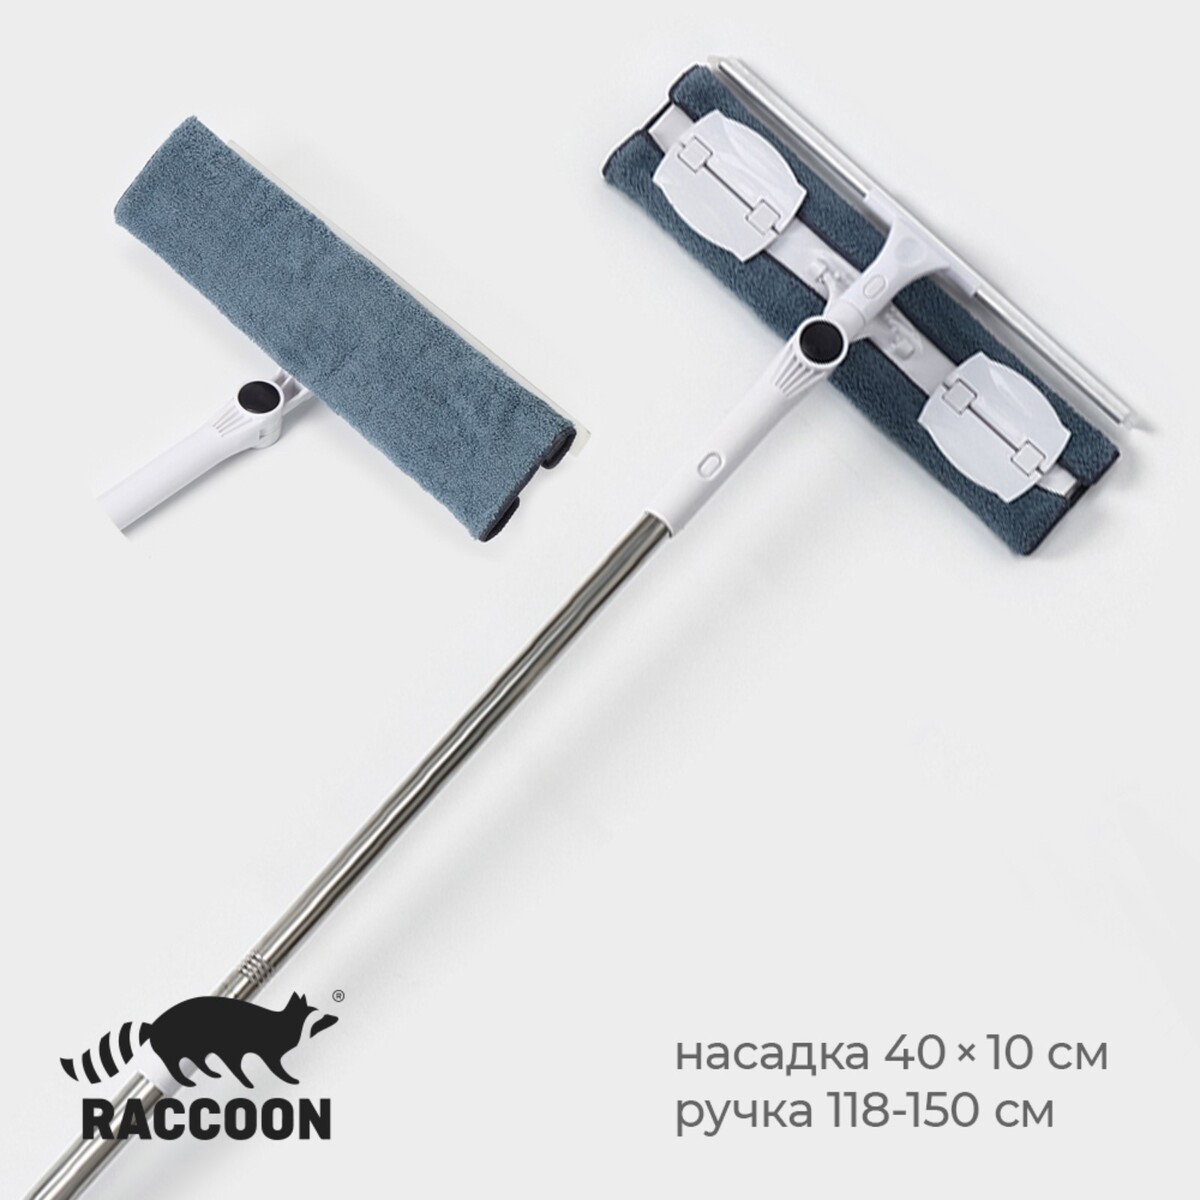 Окномойка бабочка raccoon, стальная телескопическая ручка, микрофибра, поворот на 180°, 40×10×118(150) см швабра с отжимом водосгоном и щёткой raccoon 2 насадки из микрофибры 42×11 5 см стальная ручка 134 см